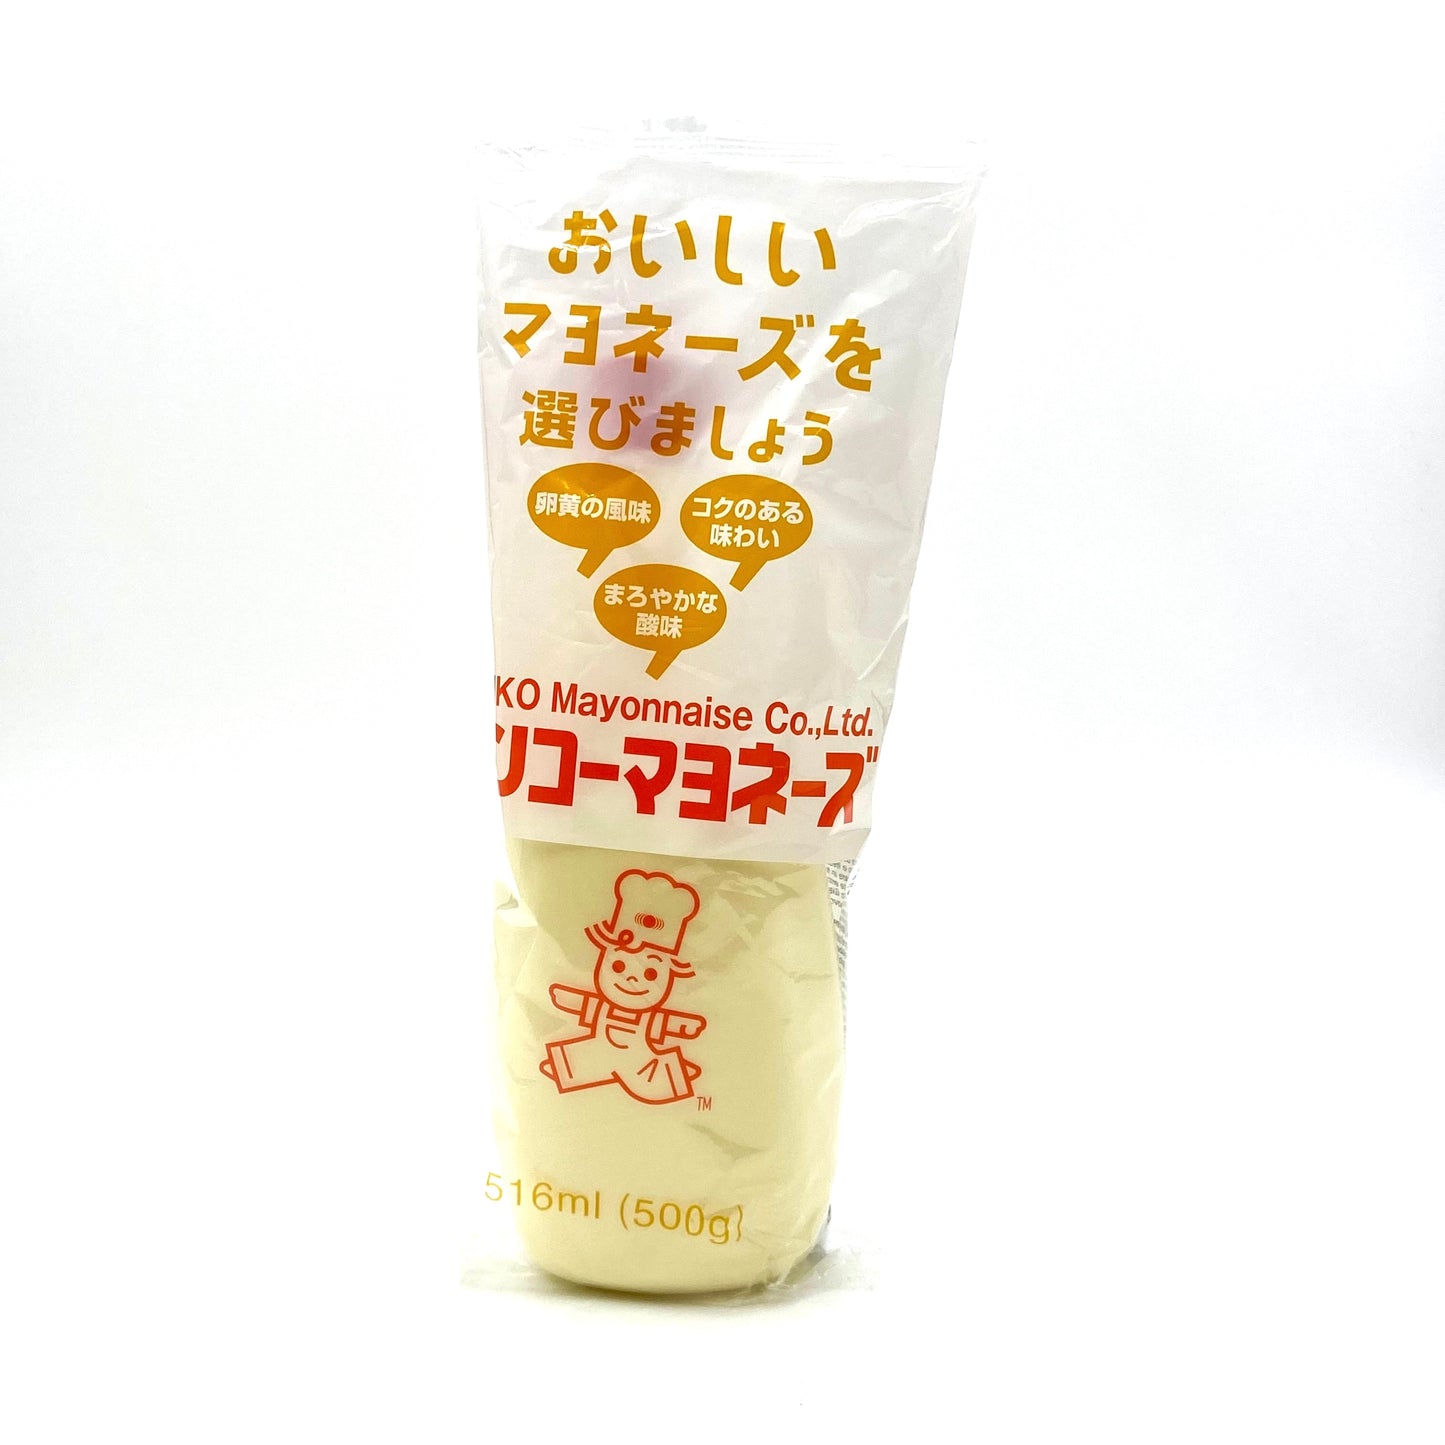 Kenko Japanese Mayonnaise 516ml